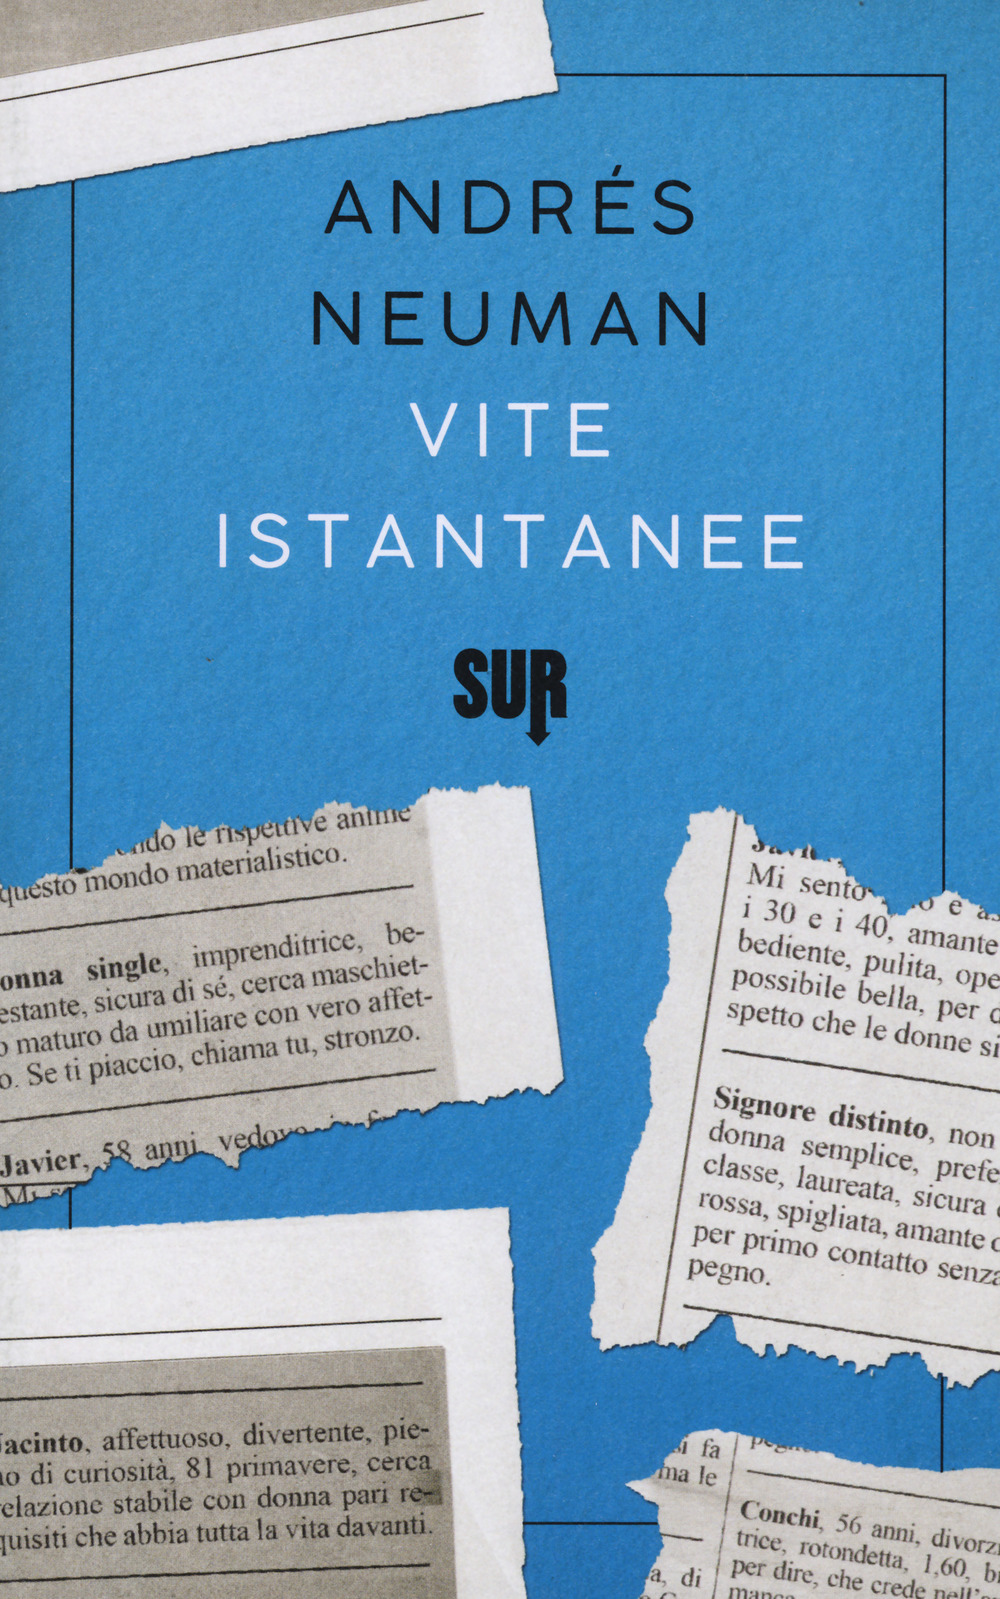 Vite istantanee - Andrés Neuman - Sur